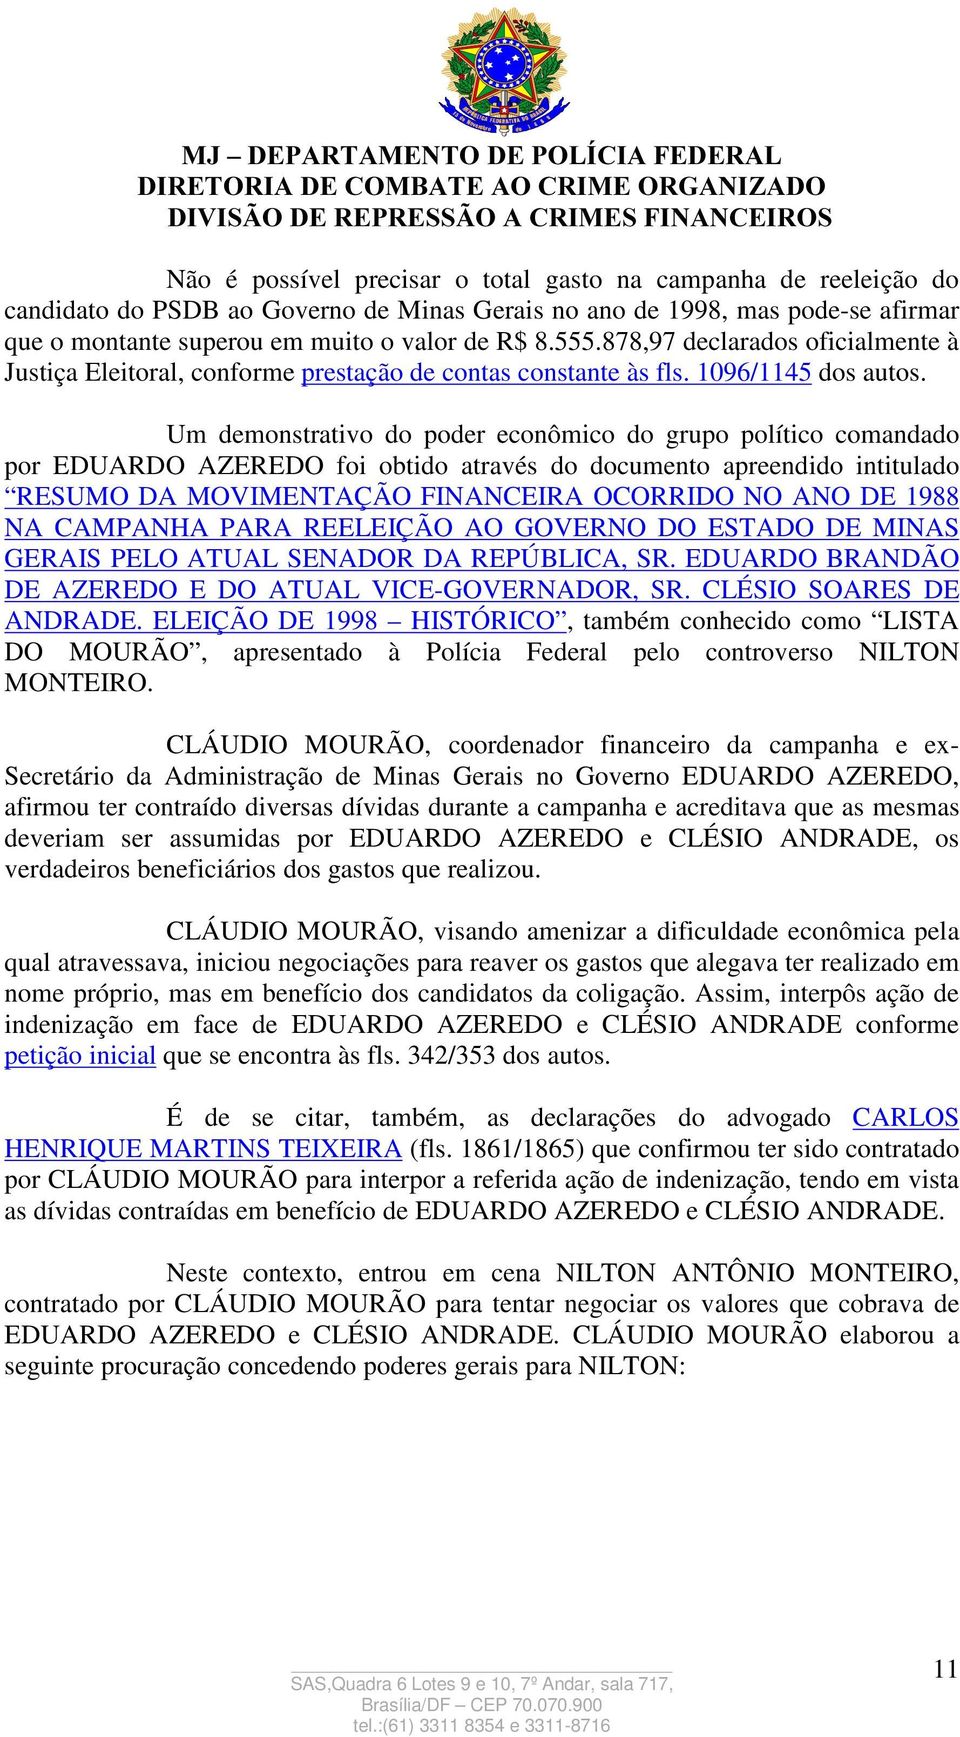 Um demonstrativo do poder econômico do grupo político comandado por EDUARDO AZEREDO foi obtido através do documento apreendido intitulado RESUMO DA MOVIMENTAÇÃO FINANCEIRA OCORRIDO NO ANO DE 1988 NA